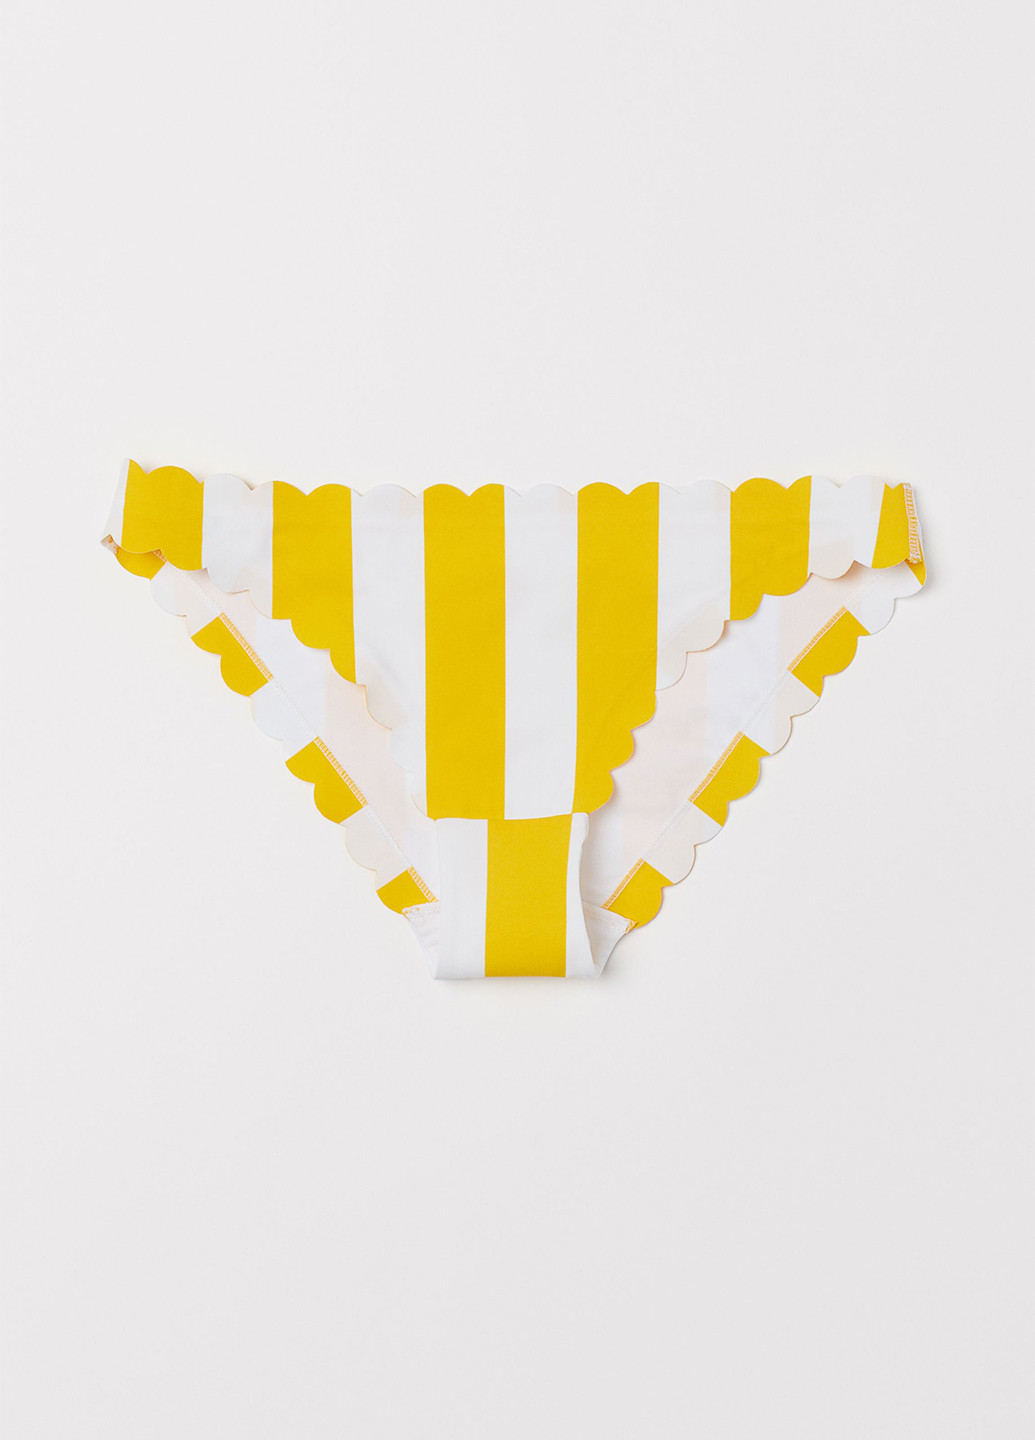 Желтые купальные трусики-плавки в полоску H&M